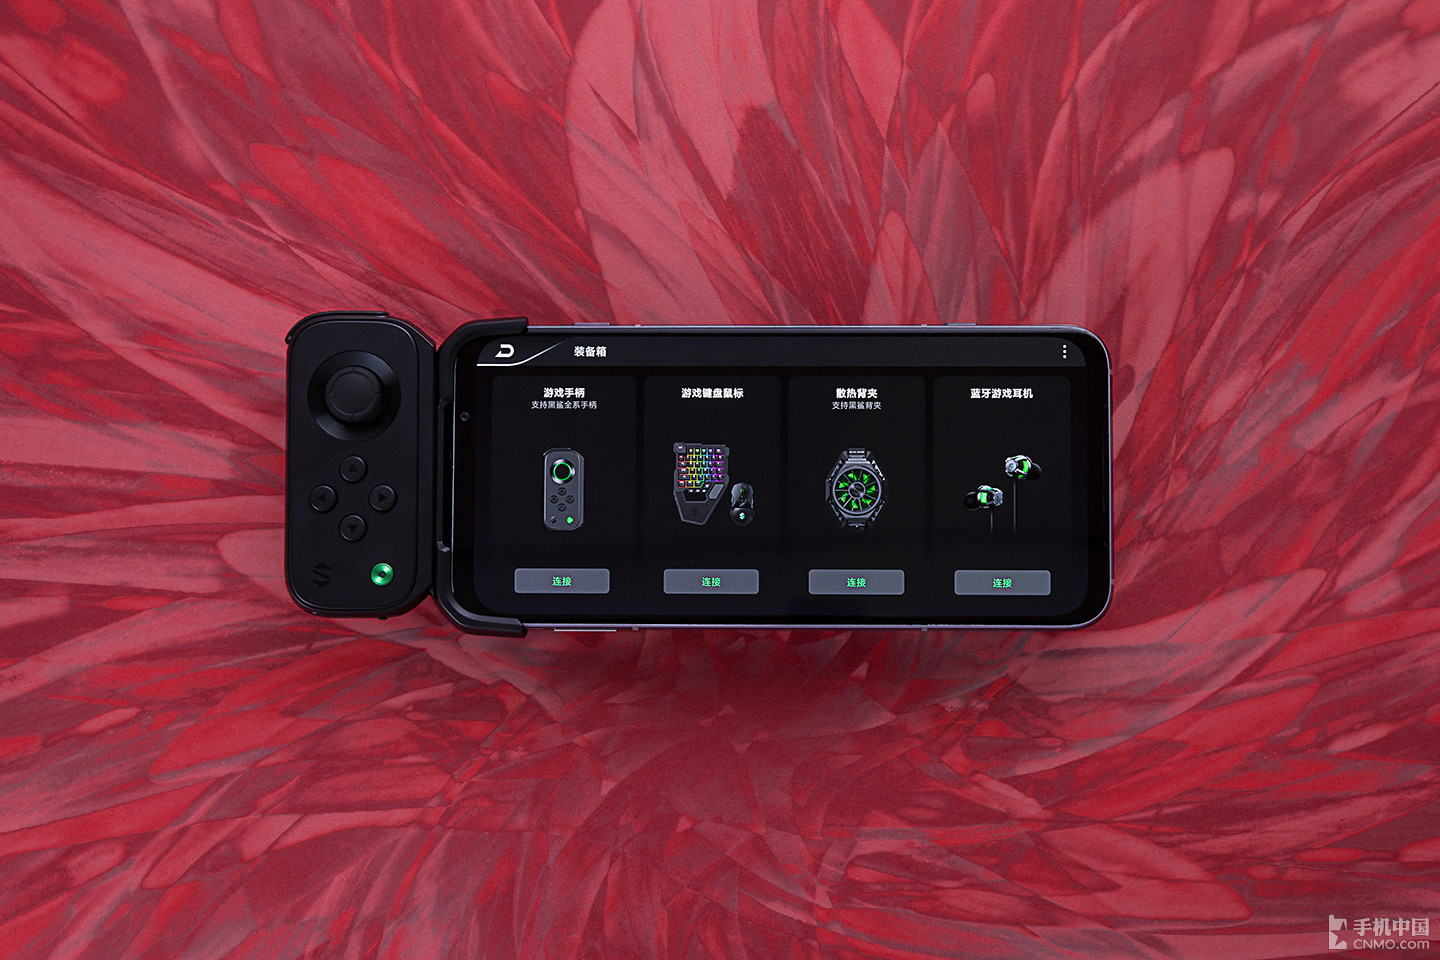 Gaming phone Black Shark 3 chính thức ra mắt:
Cấu hình mạnh, thiết kế hầm hố, giá từ 11.7 triệu đồng